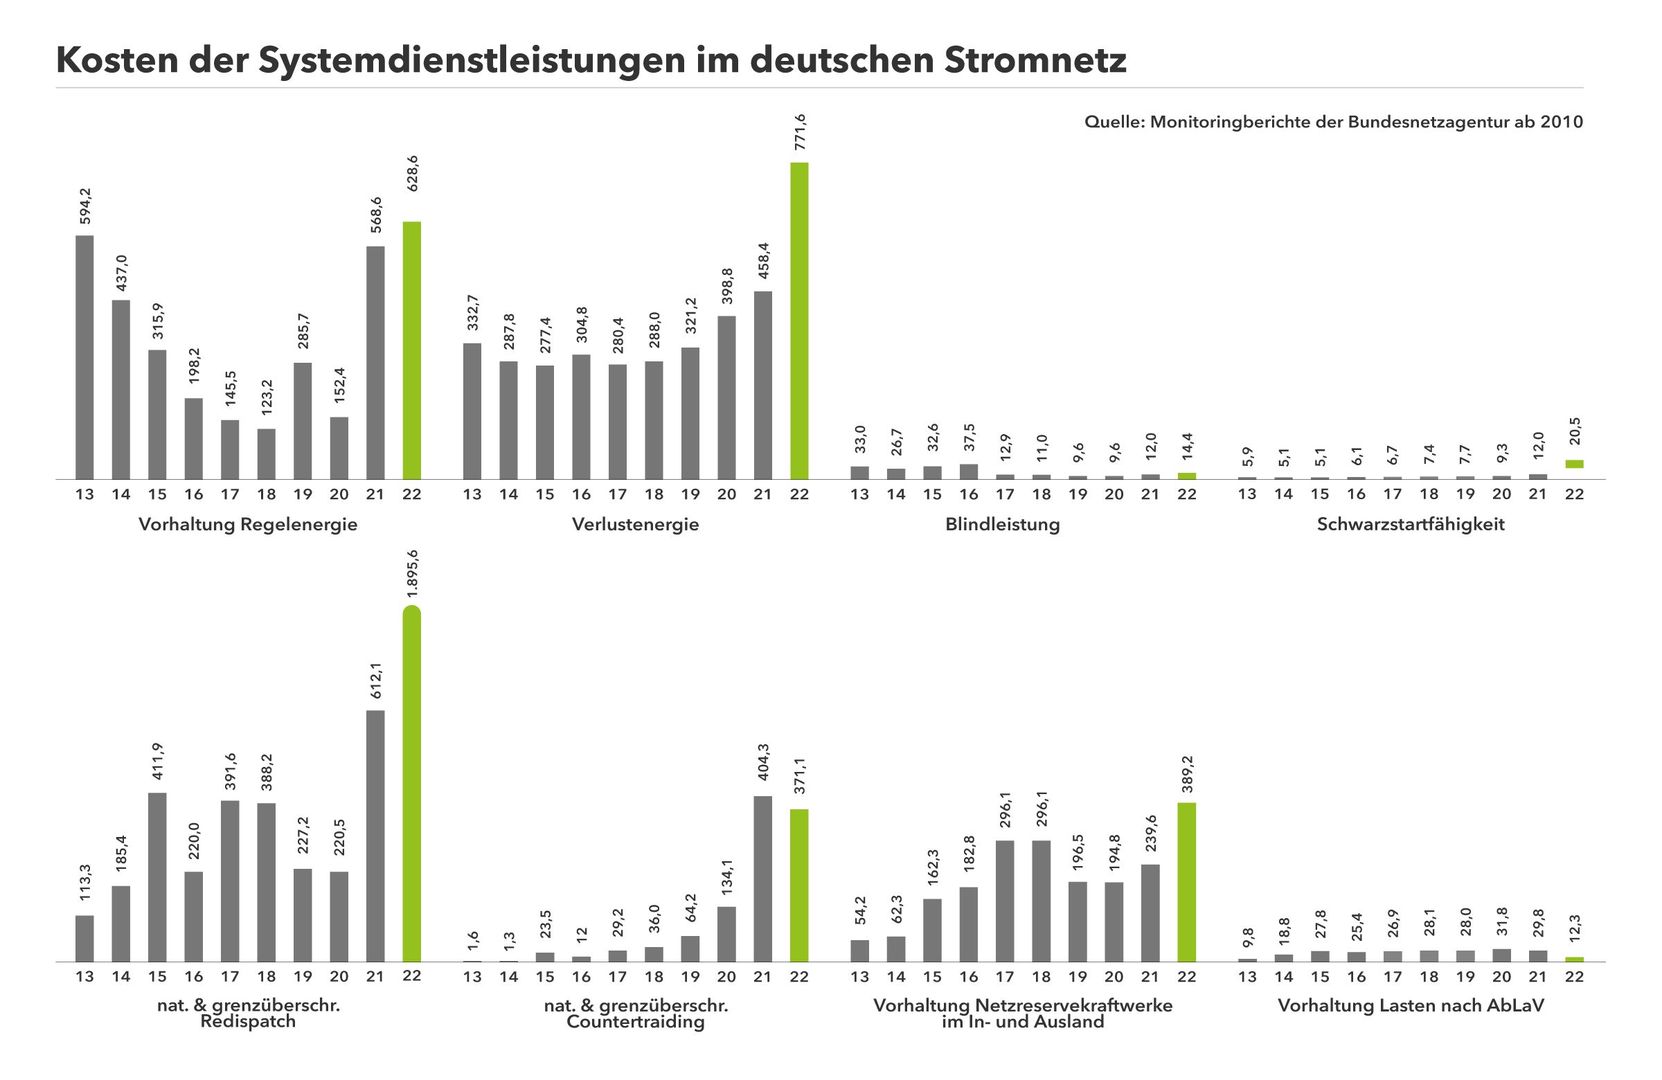 Balkendiagrammen zu verschiedenen Kostenpunkten der Systemdienstleistungen der deutschen Übertragungsnetzbetreiber seit 2010.